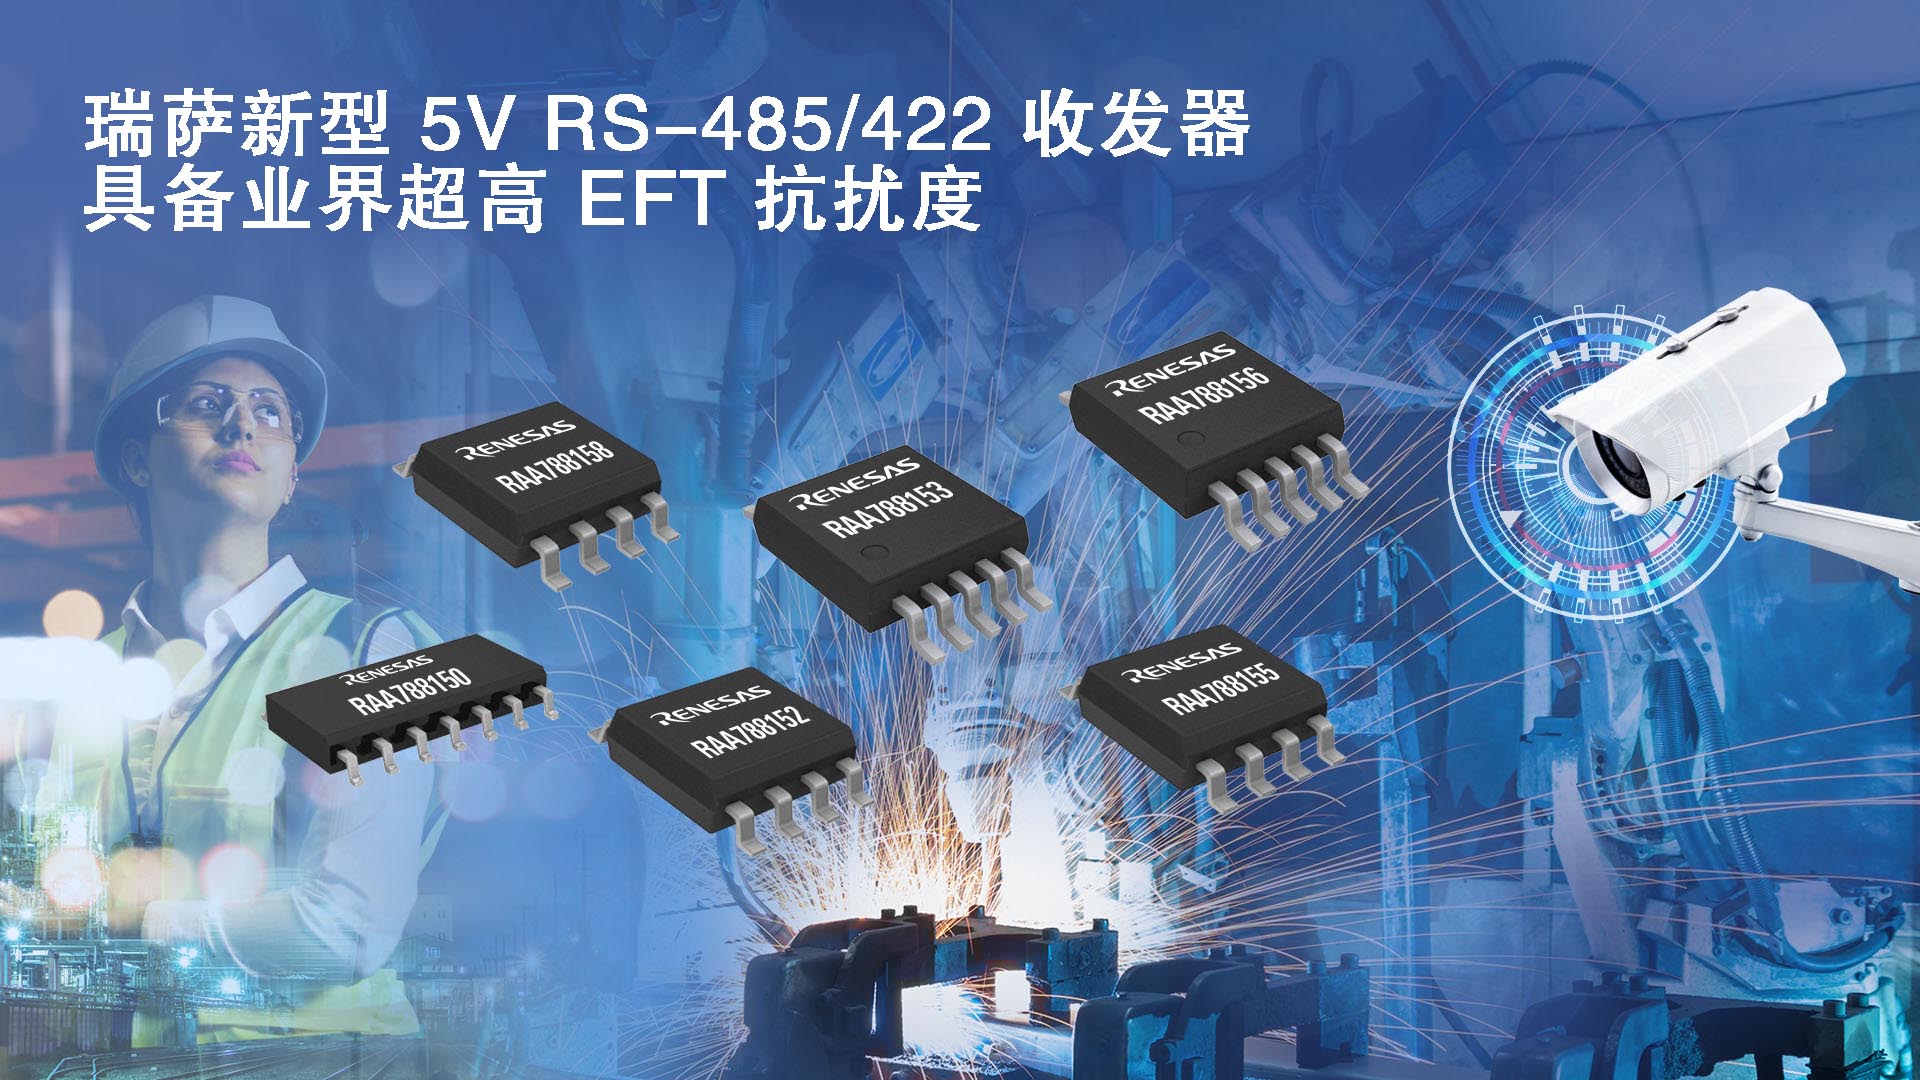 “瑞萨电子推出具备业界超高EFT抗扰度的5V